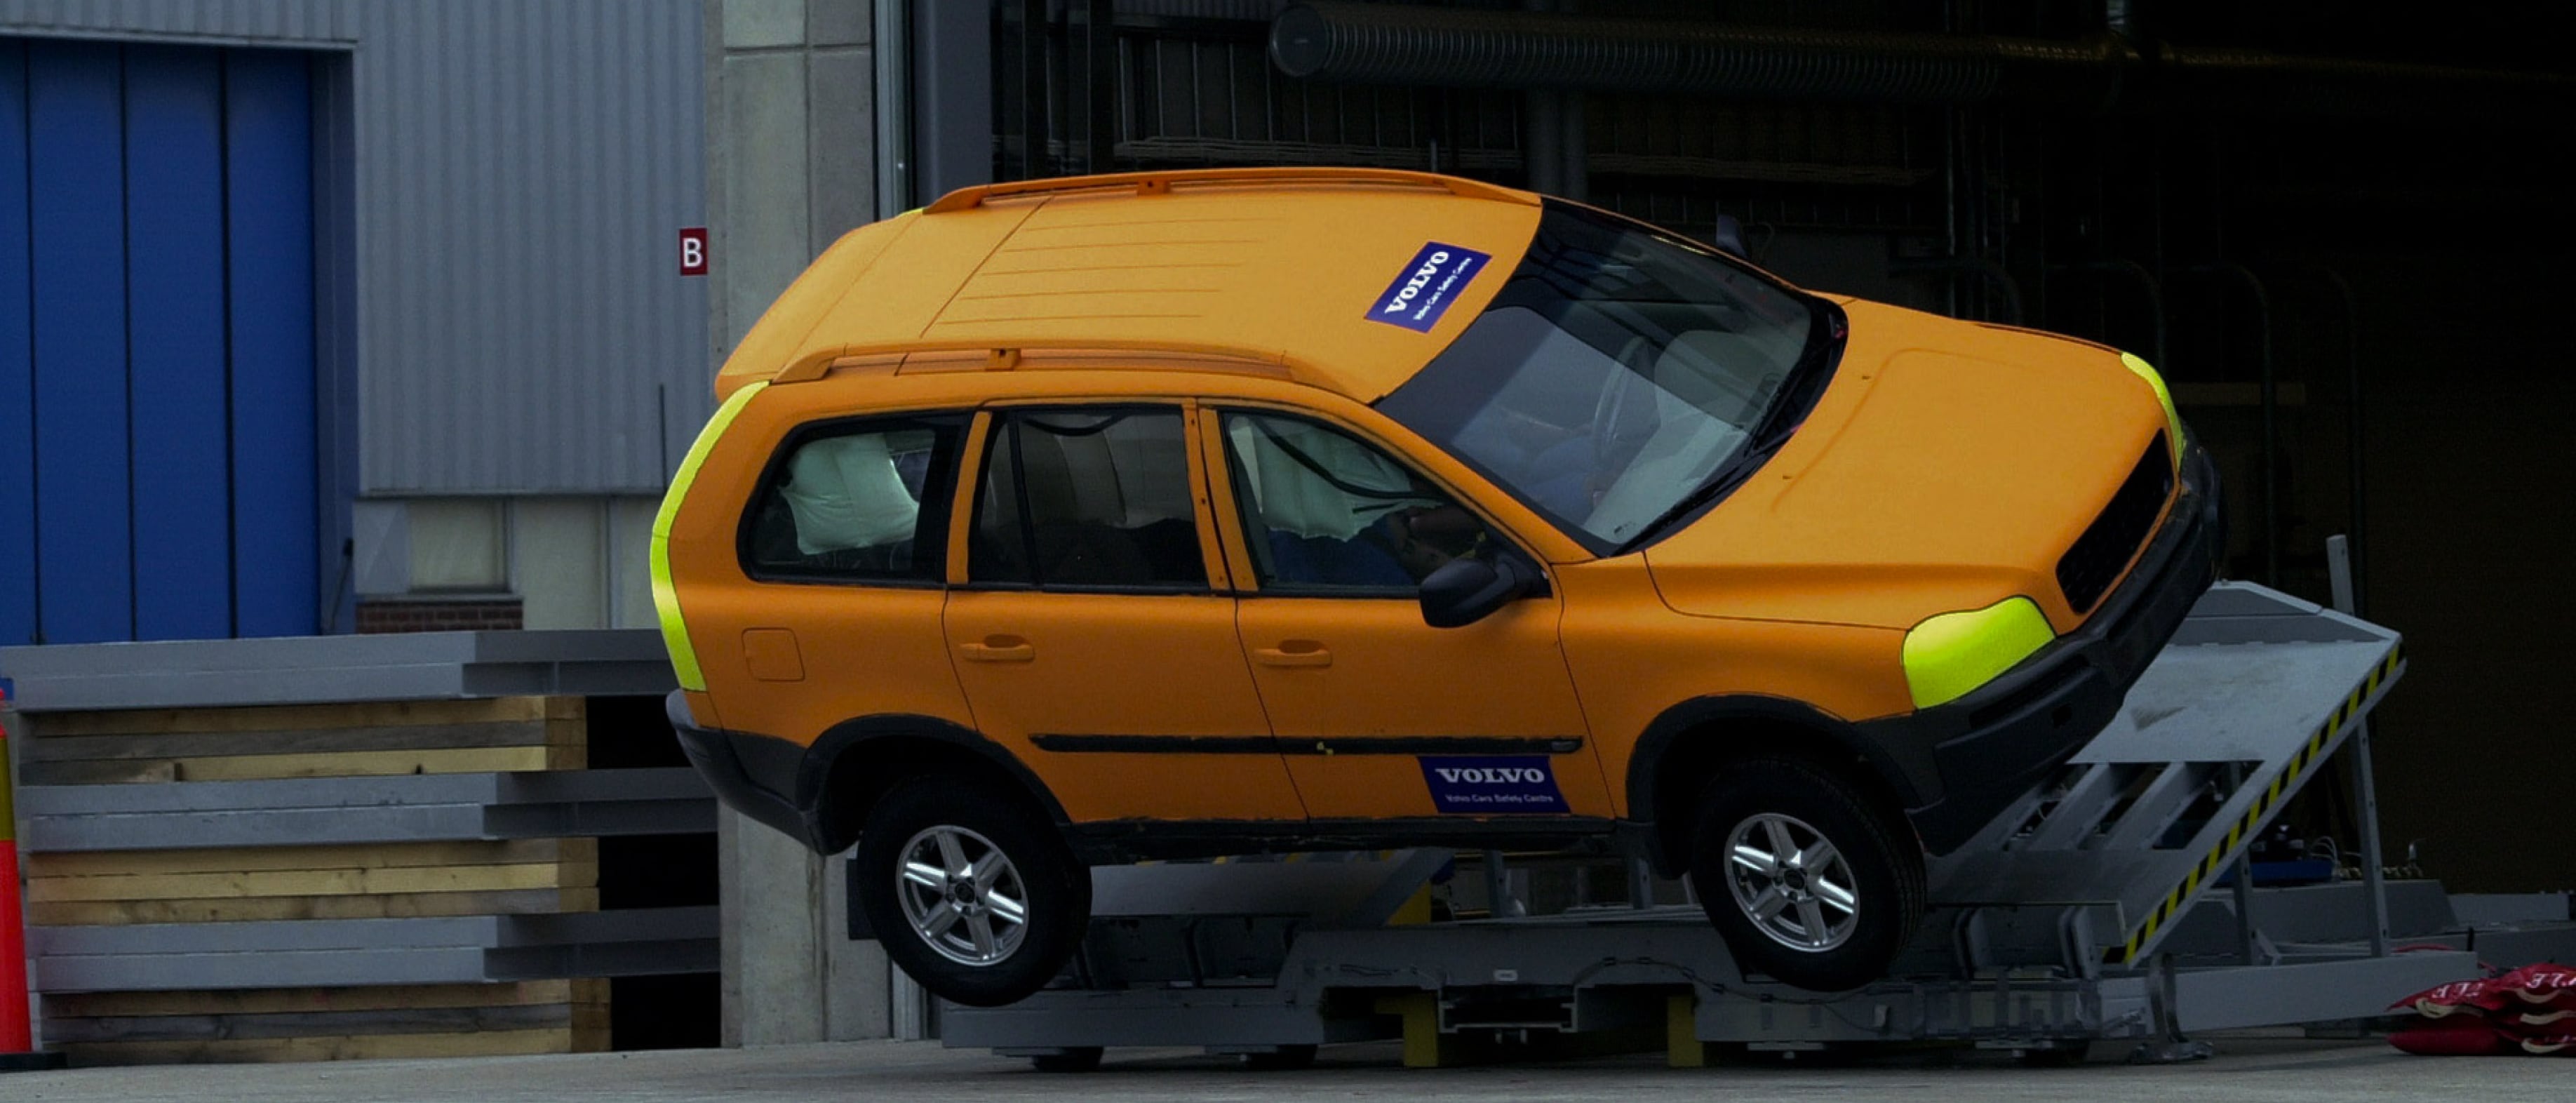 Një SUV Volvo në teste goditjeje duke verifikuar sistemin e kontrollit të stabilitetit dhe strukturën e sigurisë.